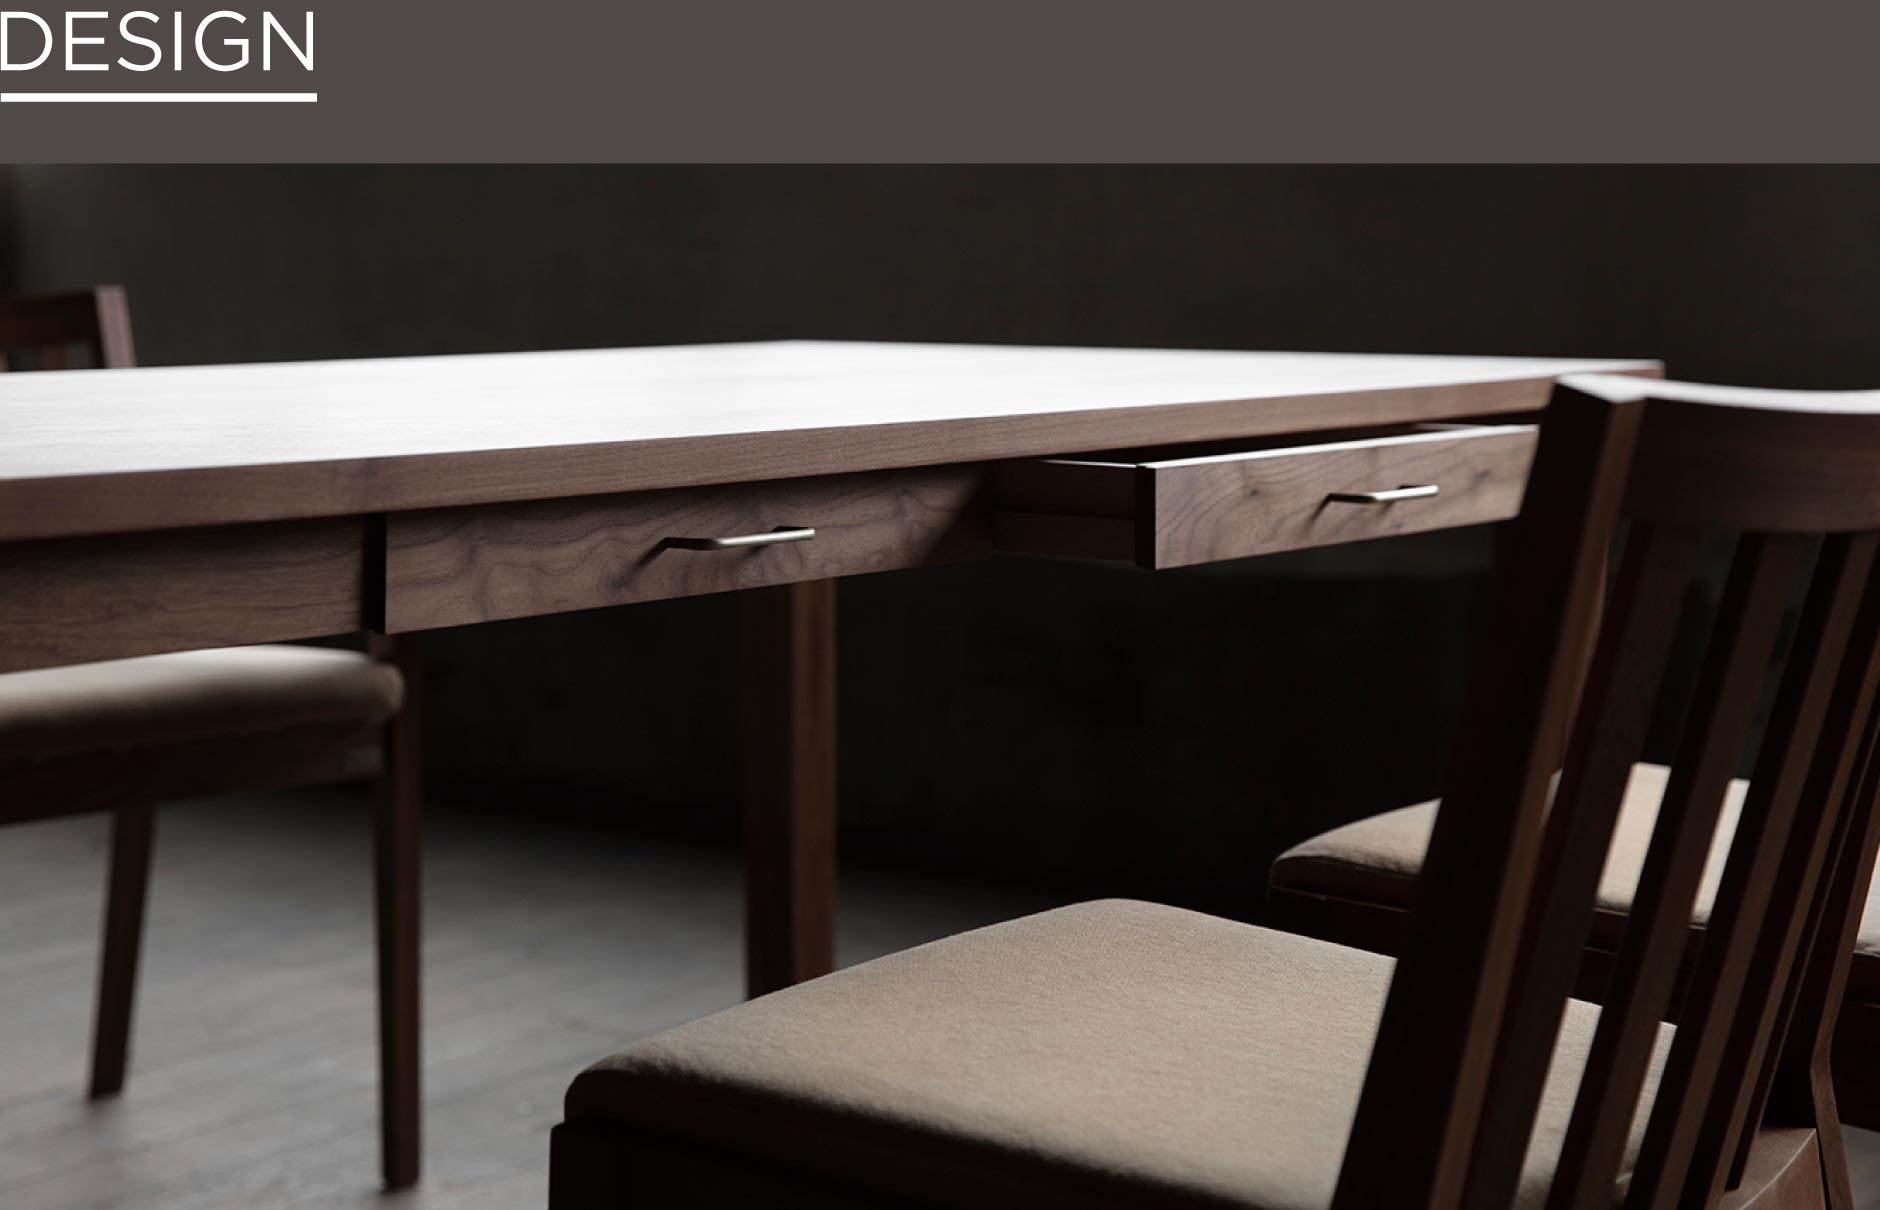 真鍮やクロカワ鉄を取手にした引出付きダイニングテーブル。無垢材で作られた上質で頑丈な家具。大阪の店舗でも展示しています。